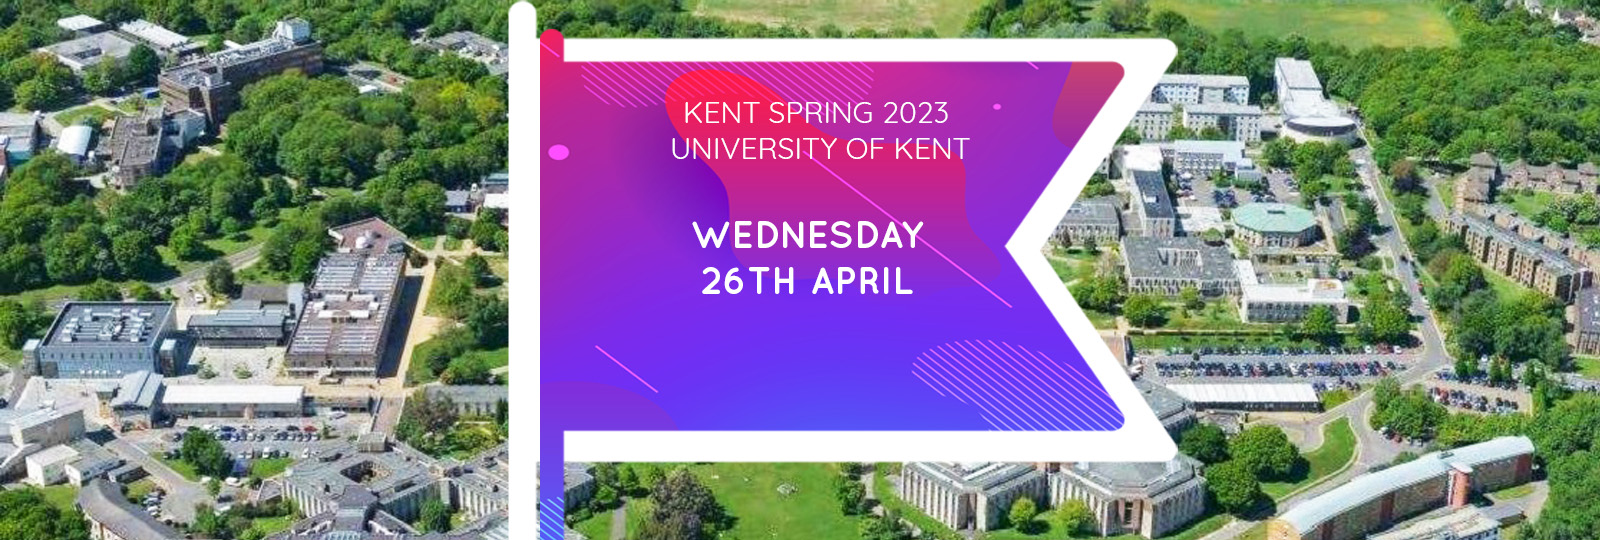 University of Kent 2023 Fair